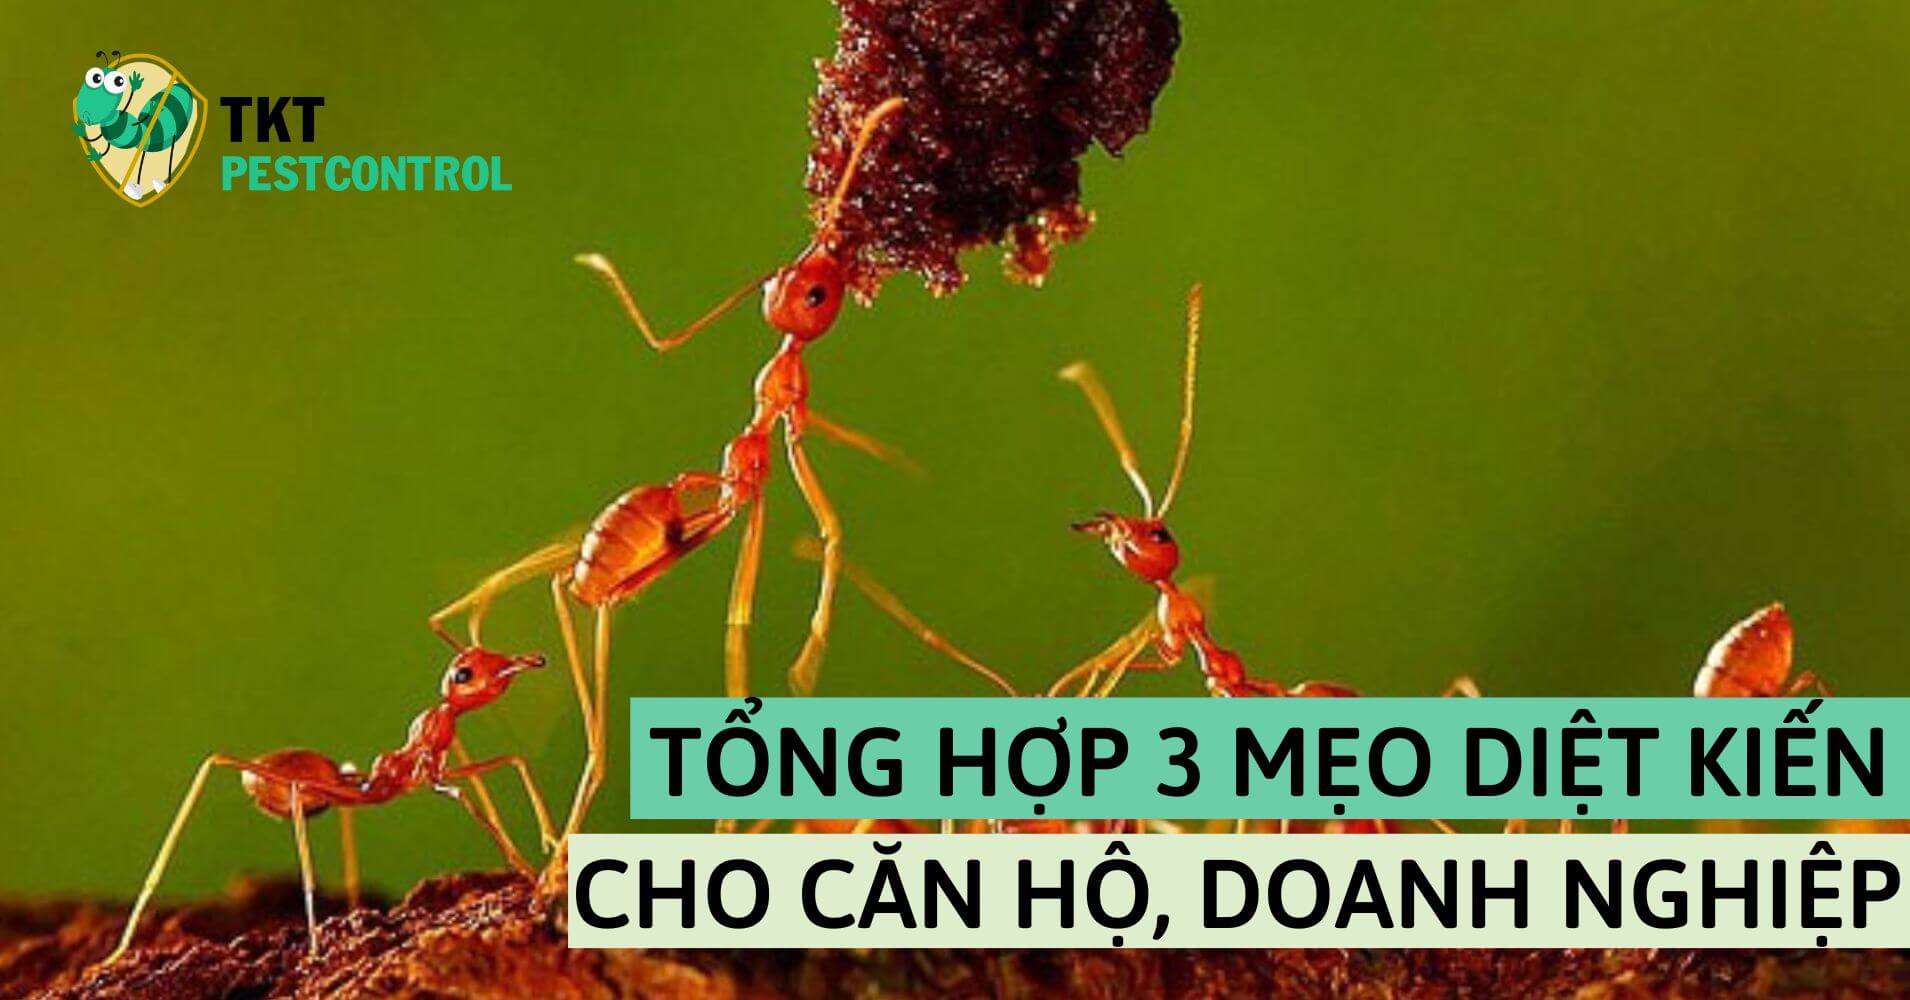 Summary of 3 effective tips to kill ants